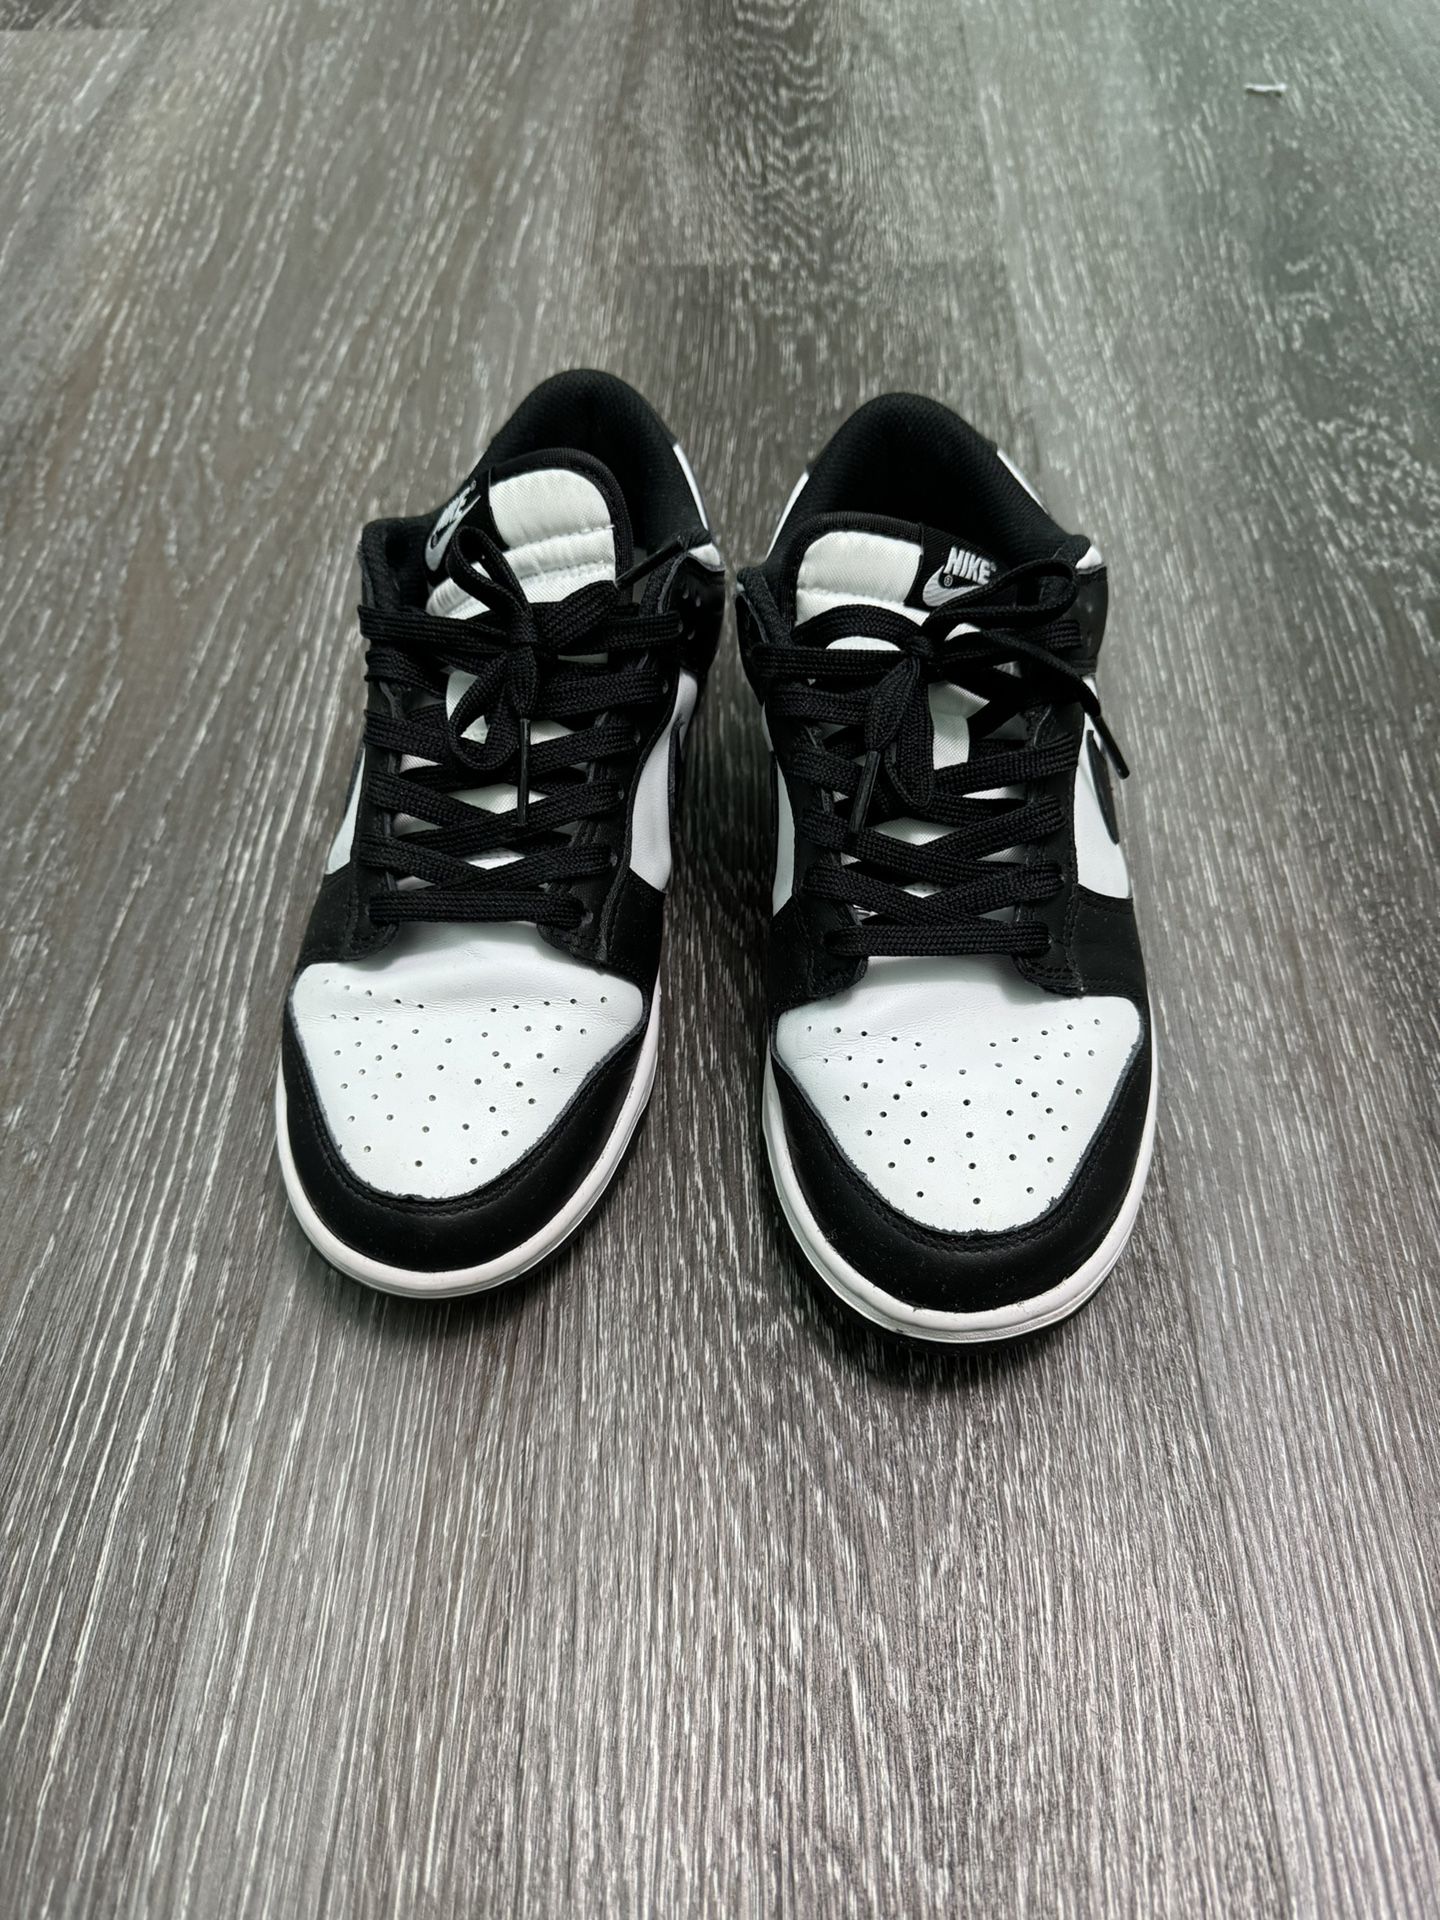 Nike Dunk Low Retro White Black Panda DD1503-101 Women’s Size 8.5